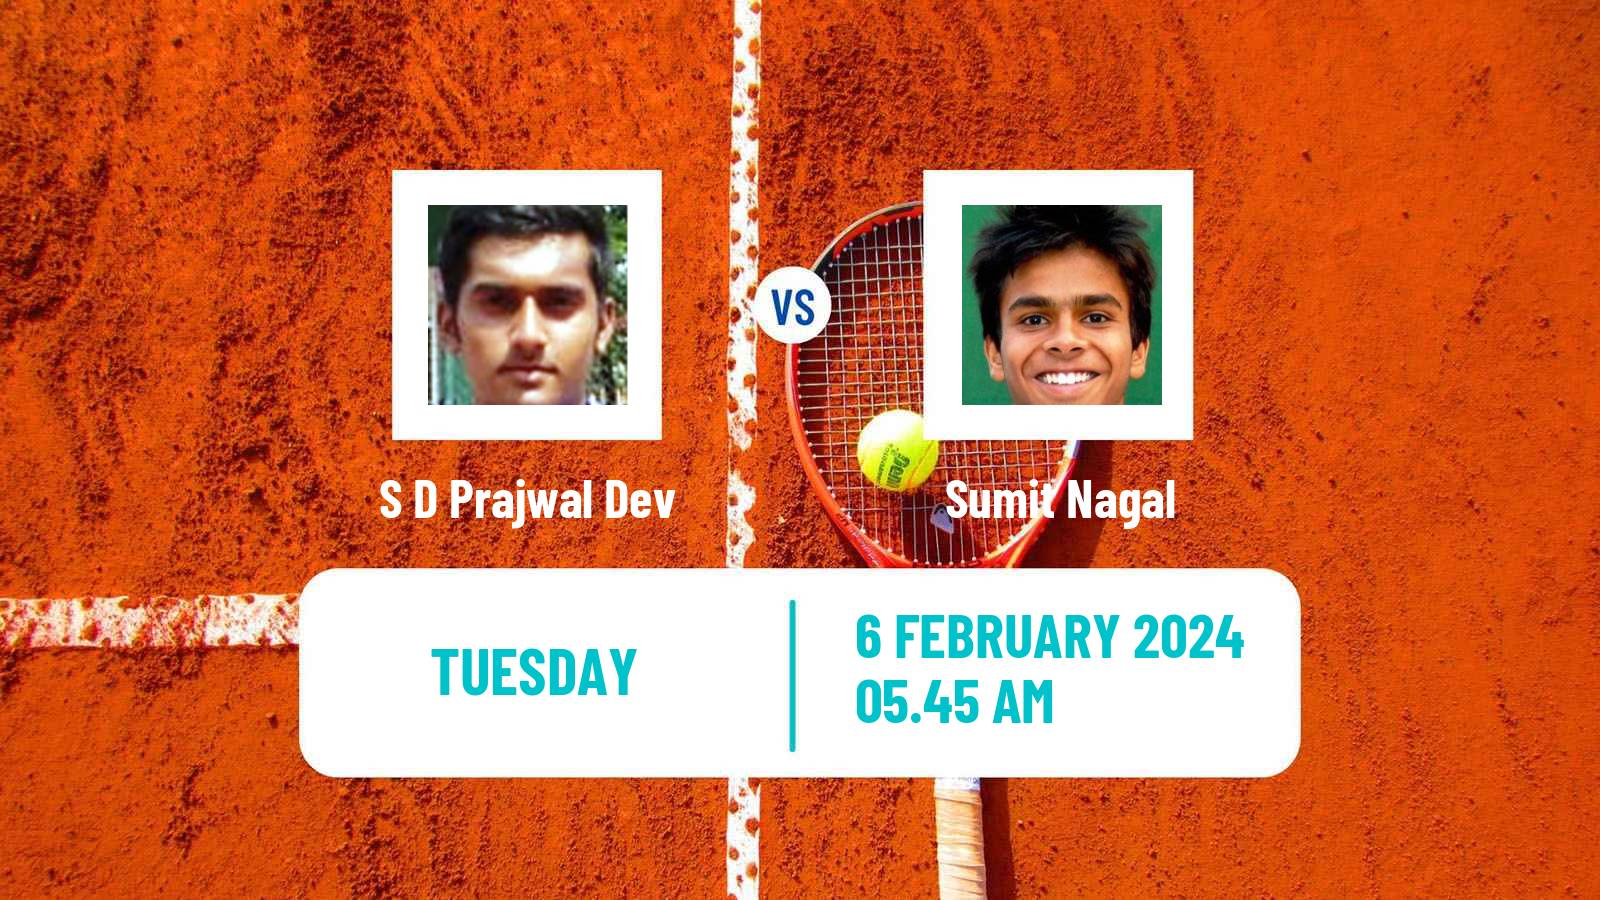 Tennis Chennai Challenger Men S D Prajwal Dev - Sumit Nagal